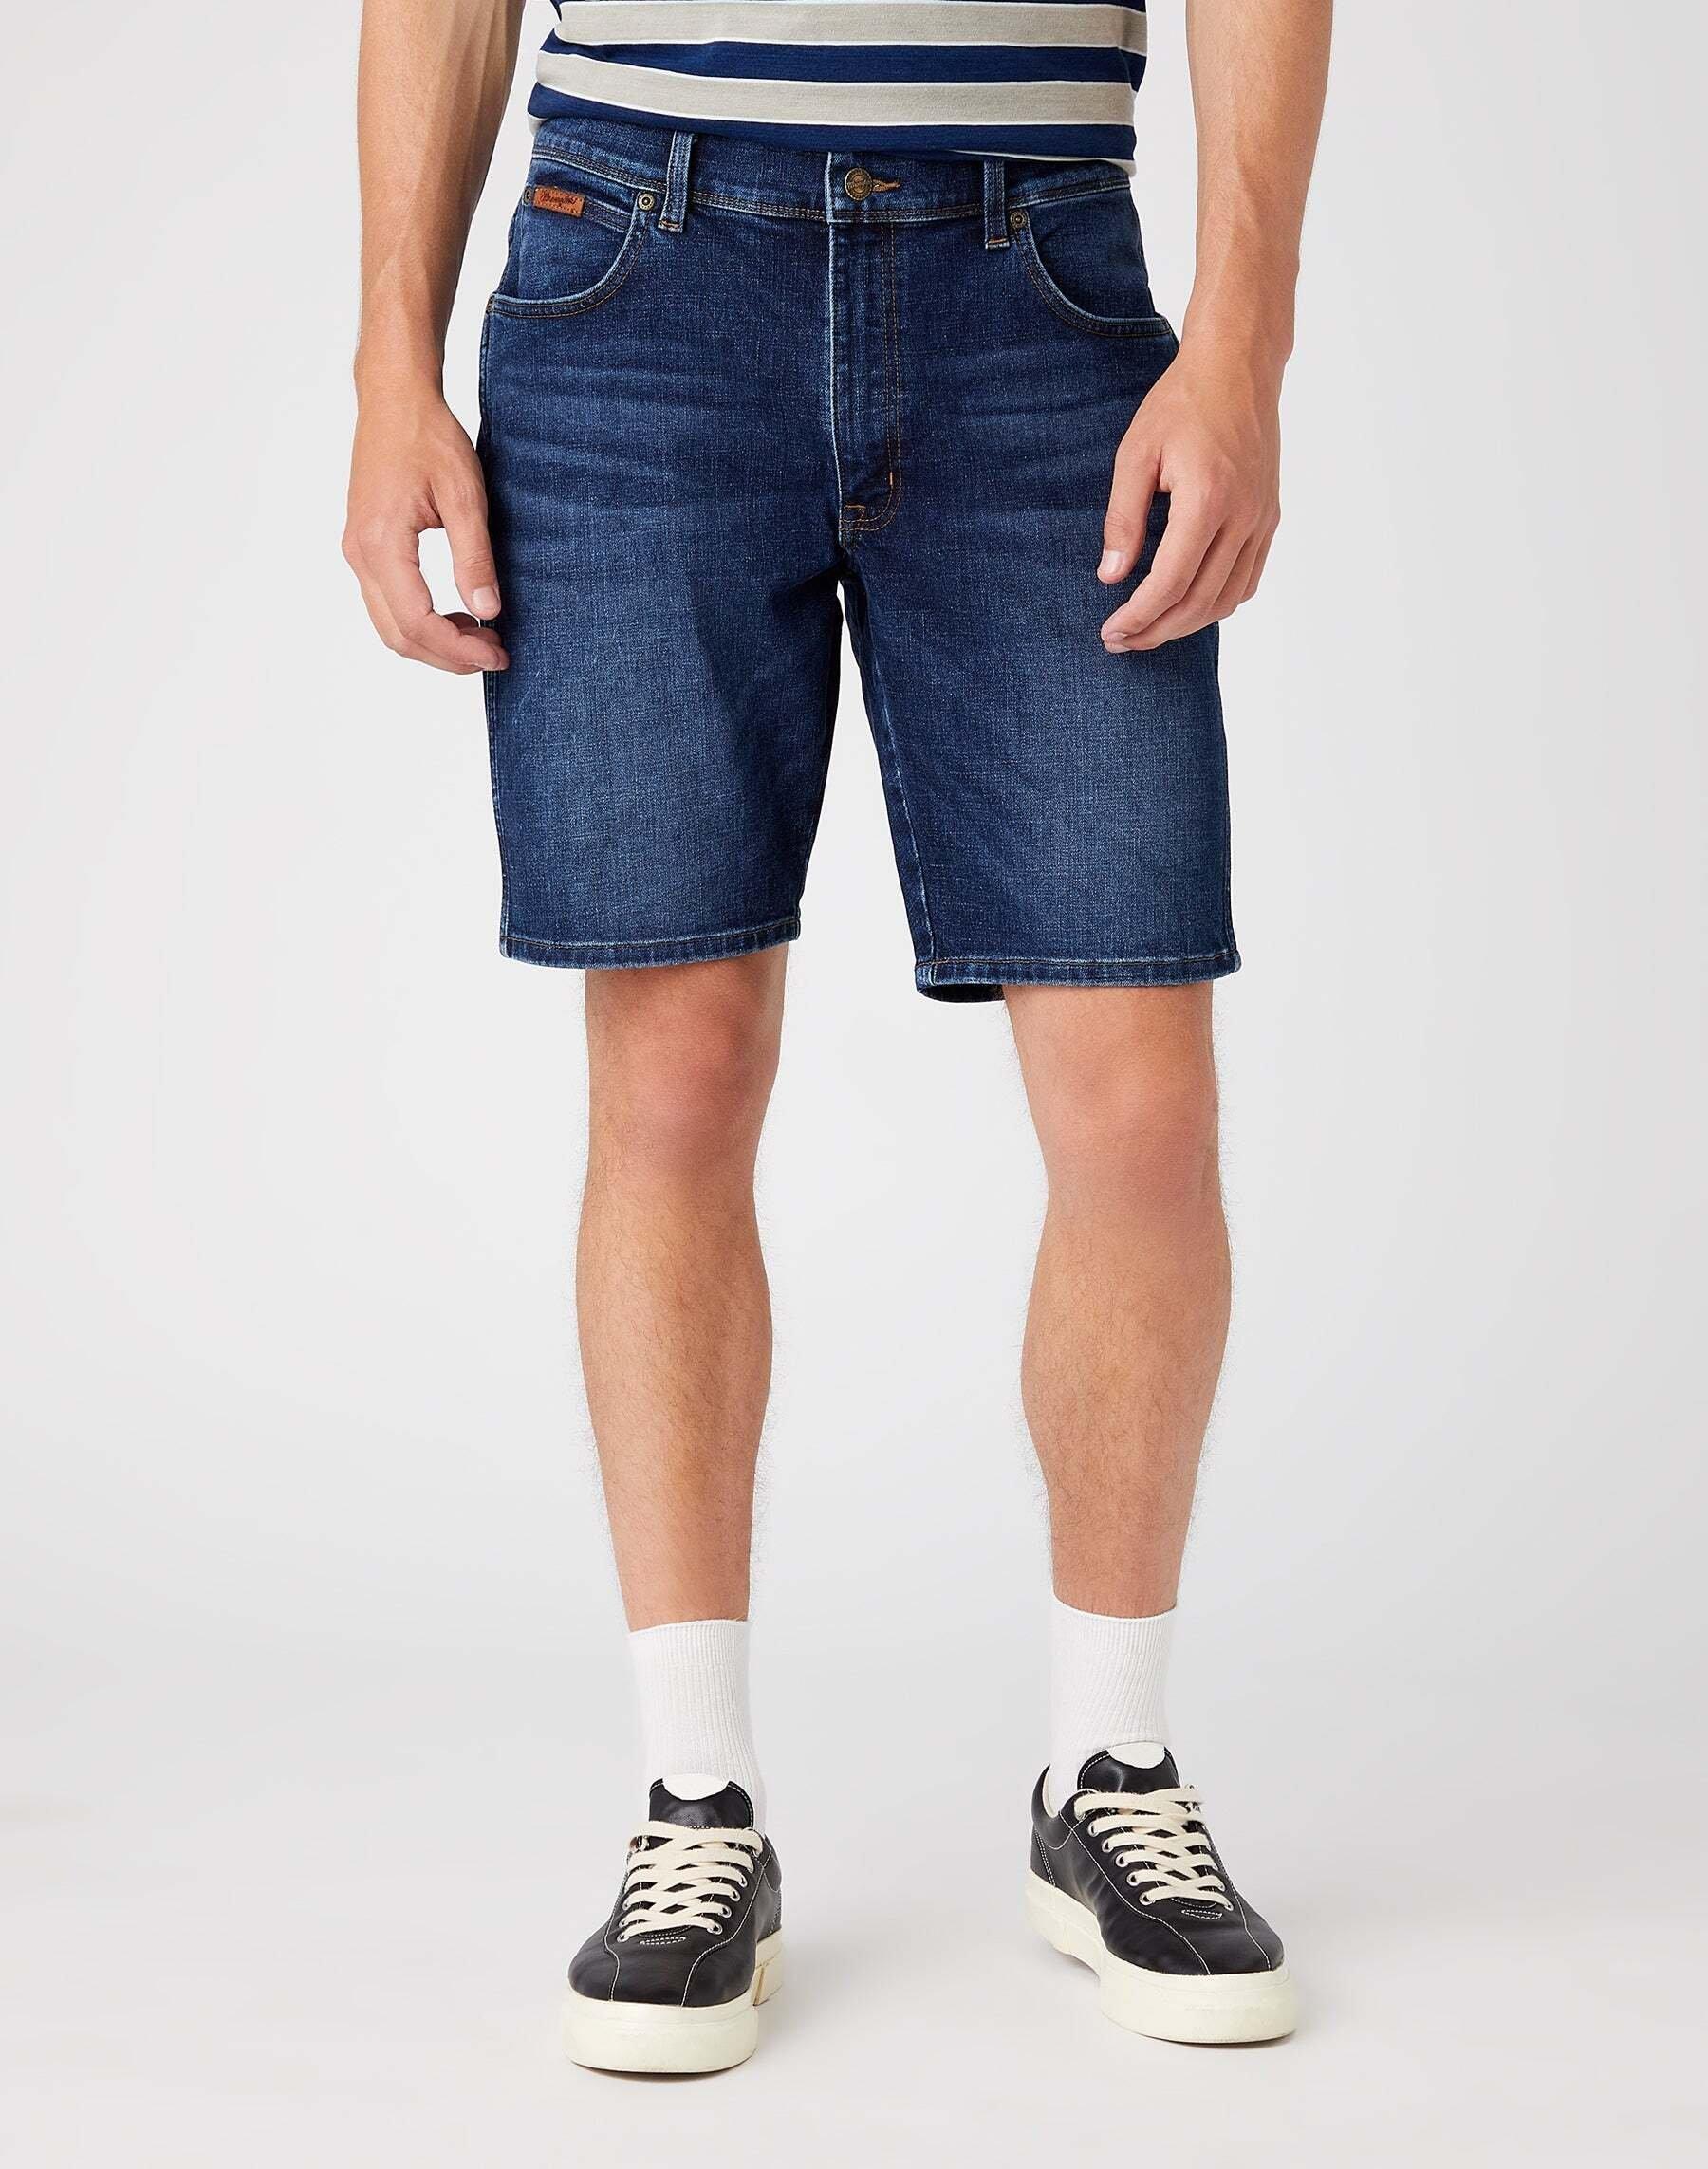 Jeans Shorts Texas Herren Blau Denim W33 von Wrangler